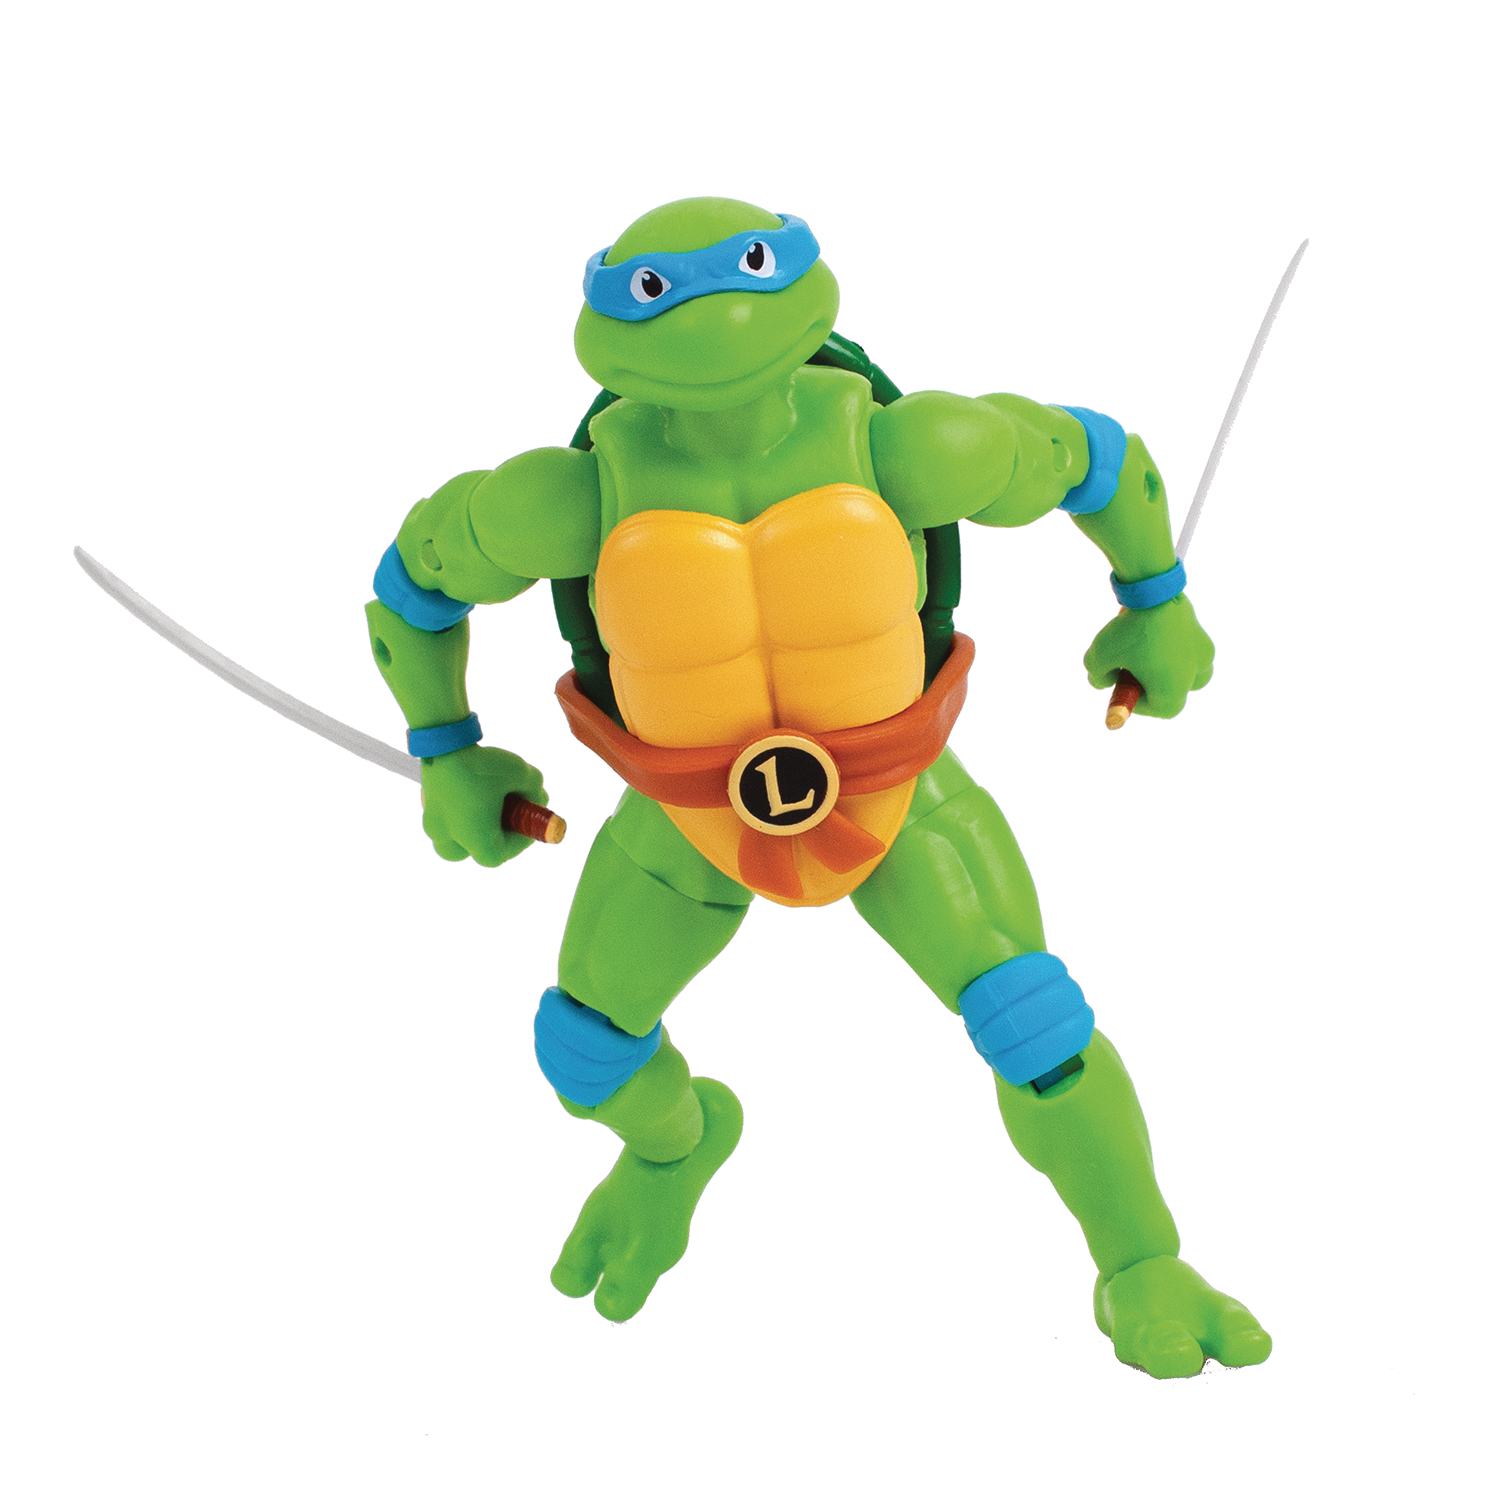 BST AXN Teenage Mutant Ninja Turtles Leonardo 5 Inch Action Figure